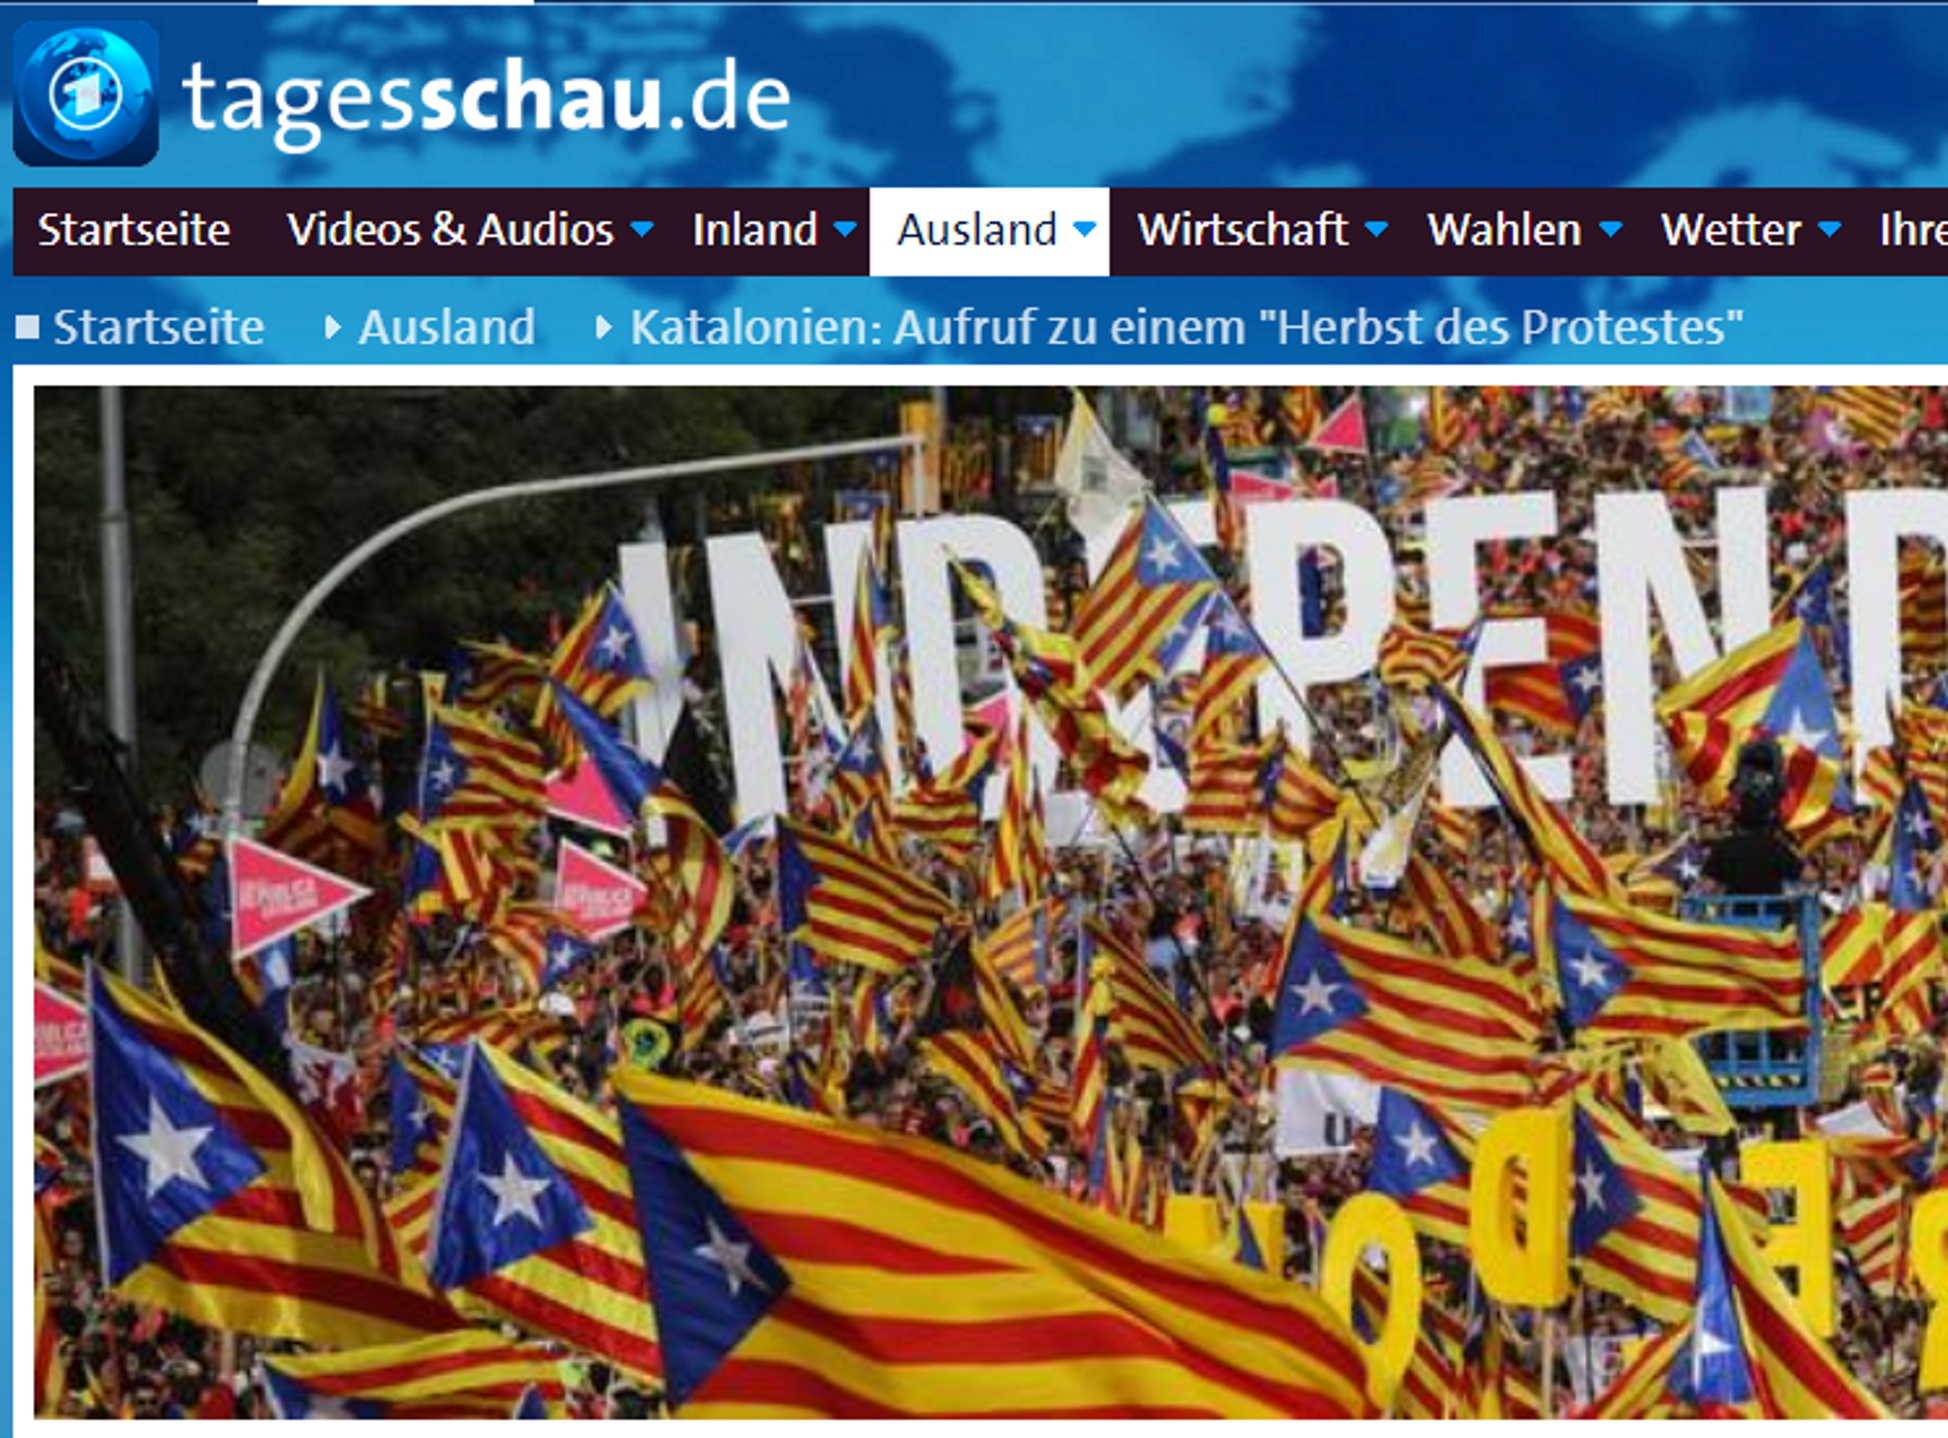 La televisió alemanya adverteix: "Ve una tardor de protestes a Catalunya"